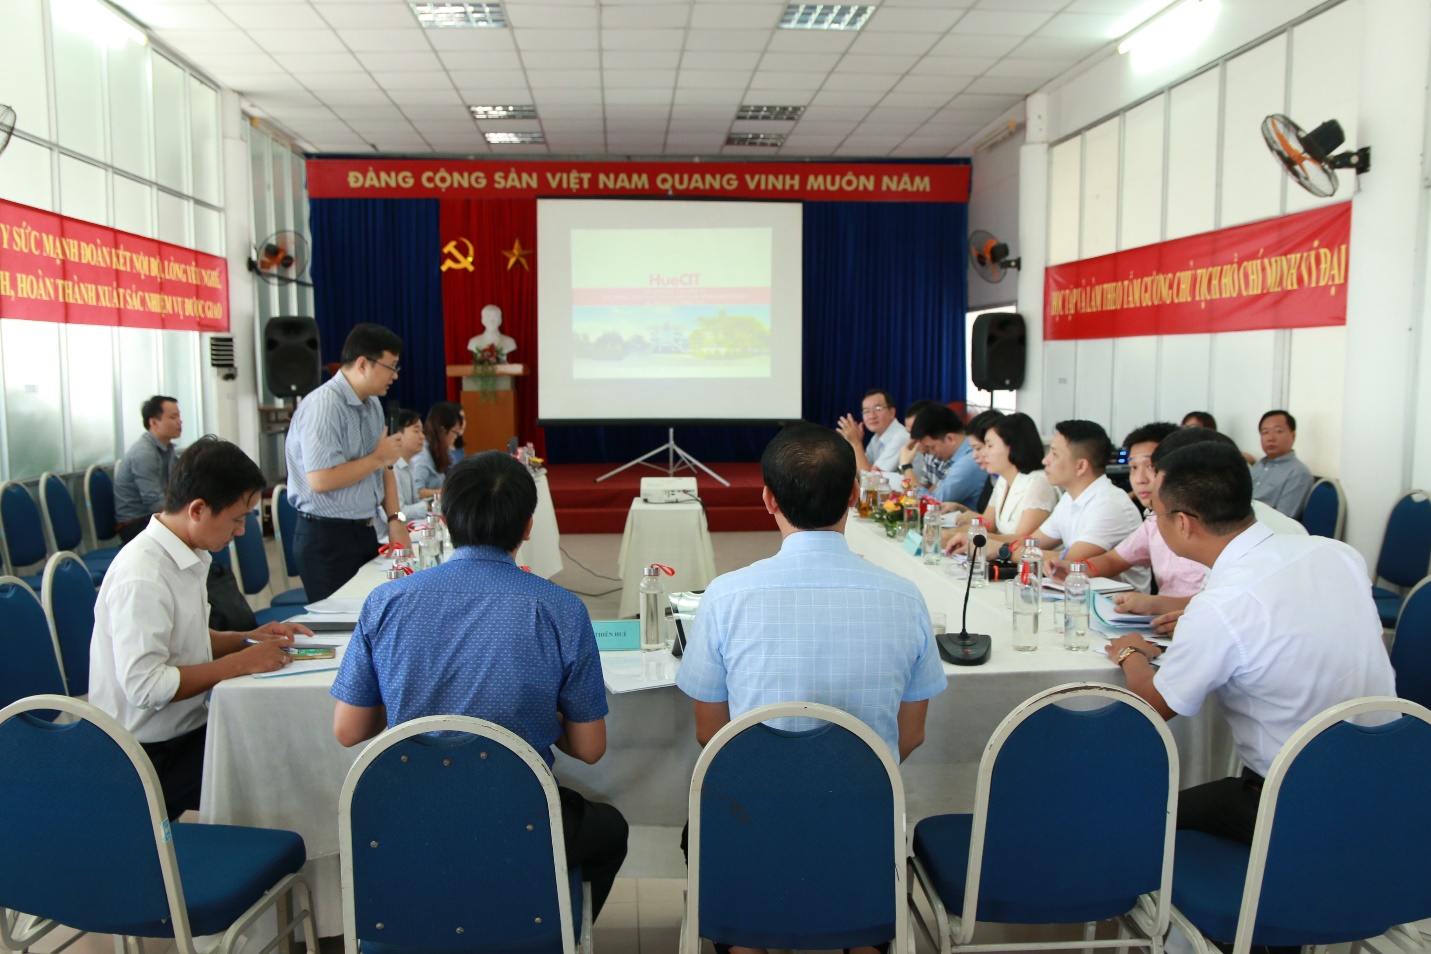 Ông Lâm Nguyễn Hải Long – Giám đốc QTSC trình bày về việc xác định vai trò của các thành viên trong chuỗi Công viên phần mềm Quang Trung